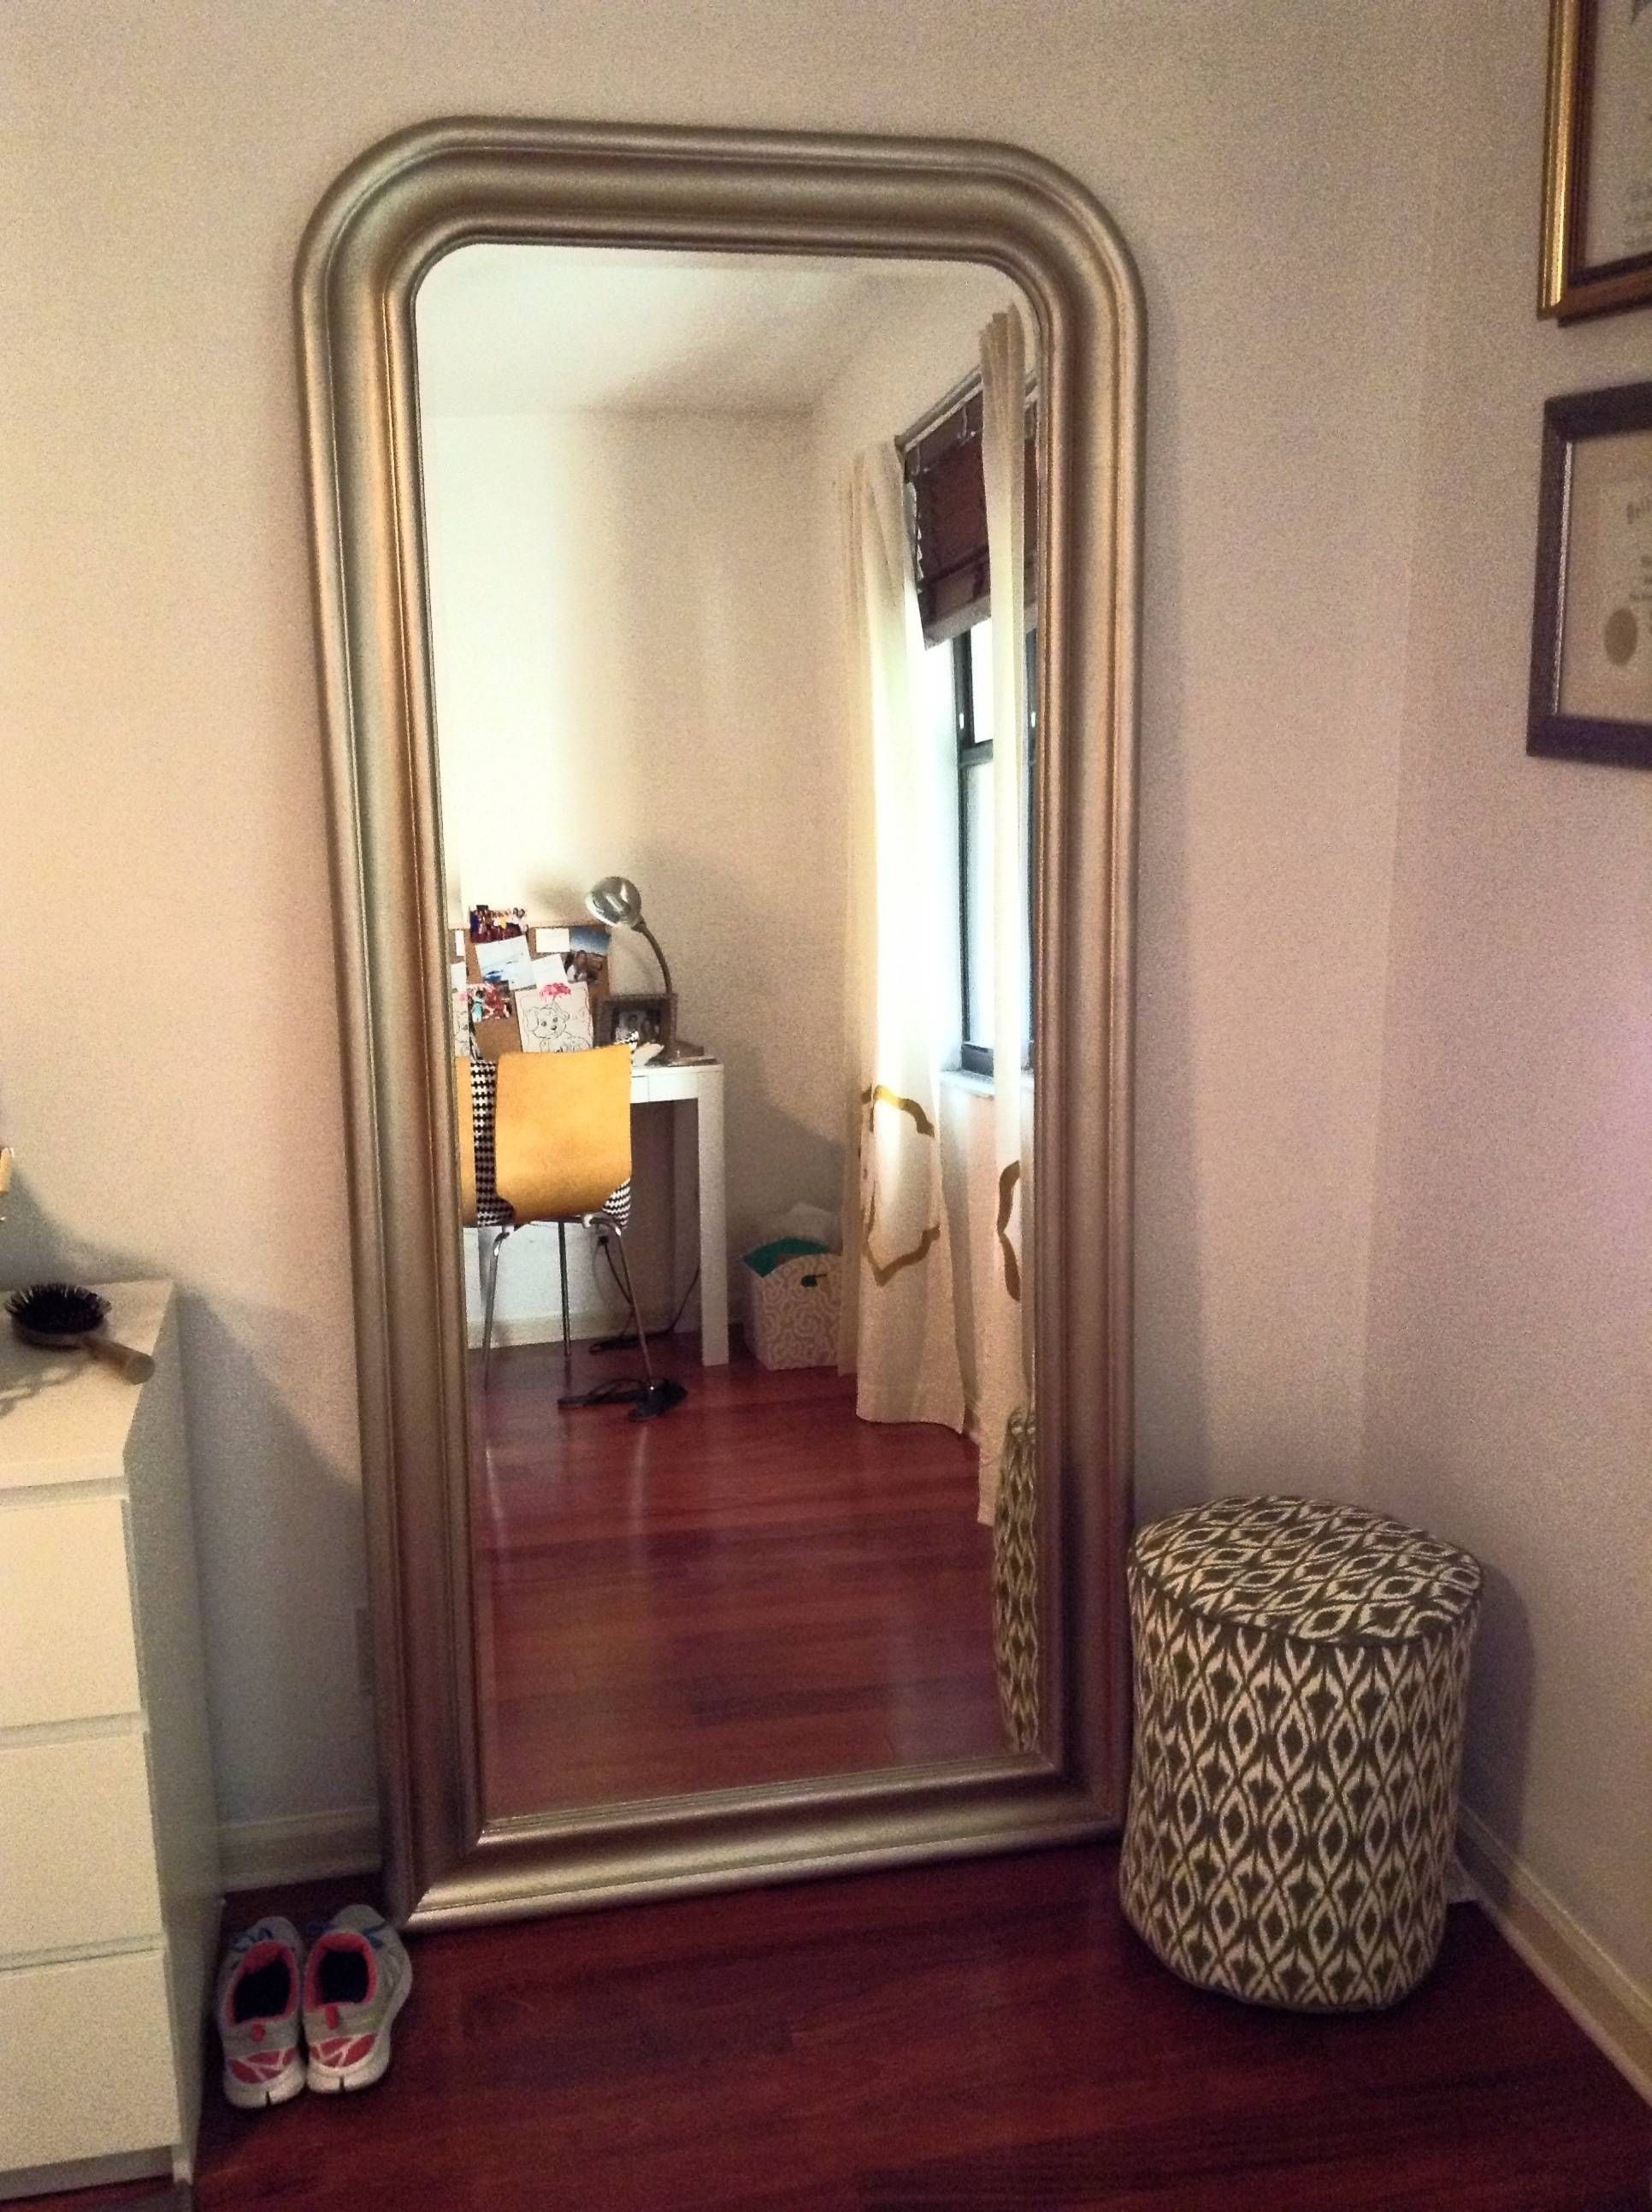 Bedroom : Fabulous Funky Mirrors Frameless Bathroom Mirror Large With Large Funky Mirrors (View 10 of 15)